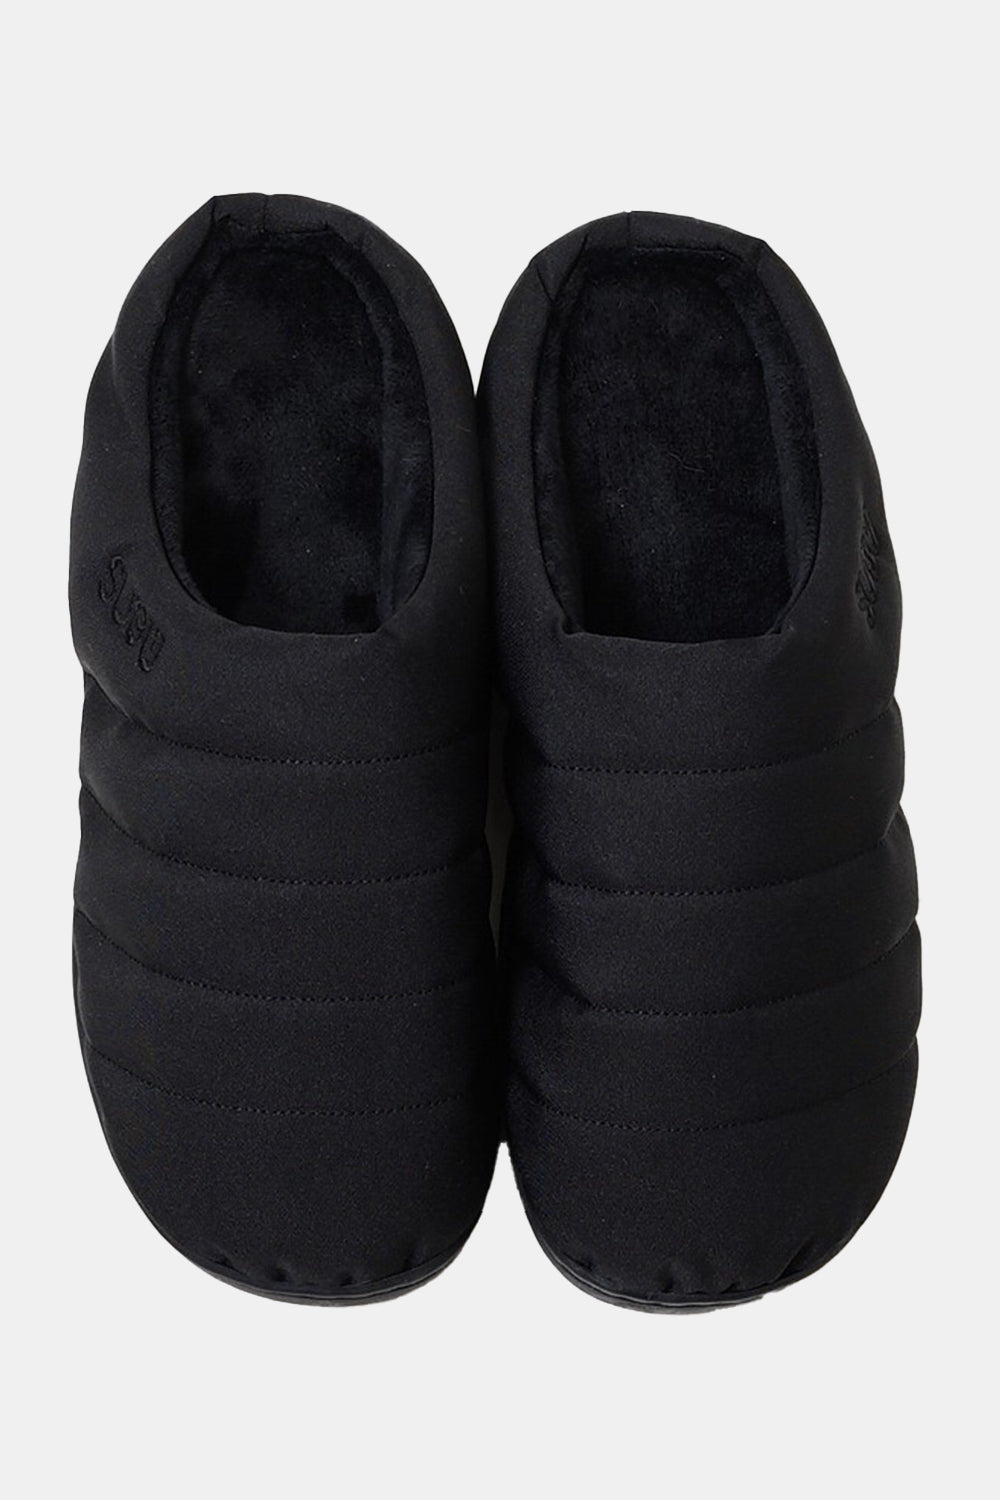 SUBU Indoor Outdoor Nannen Slippers (Black)